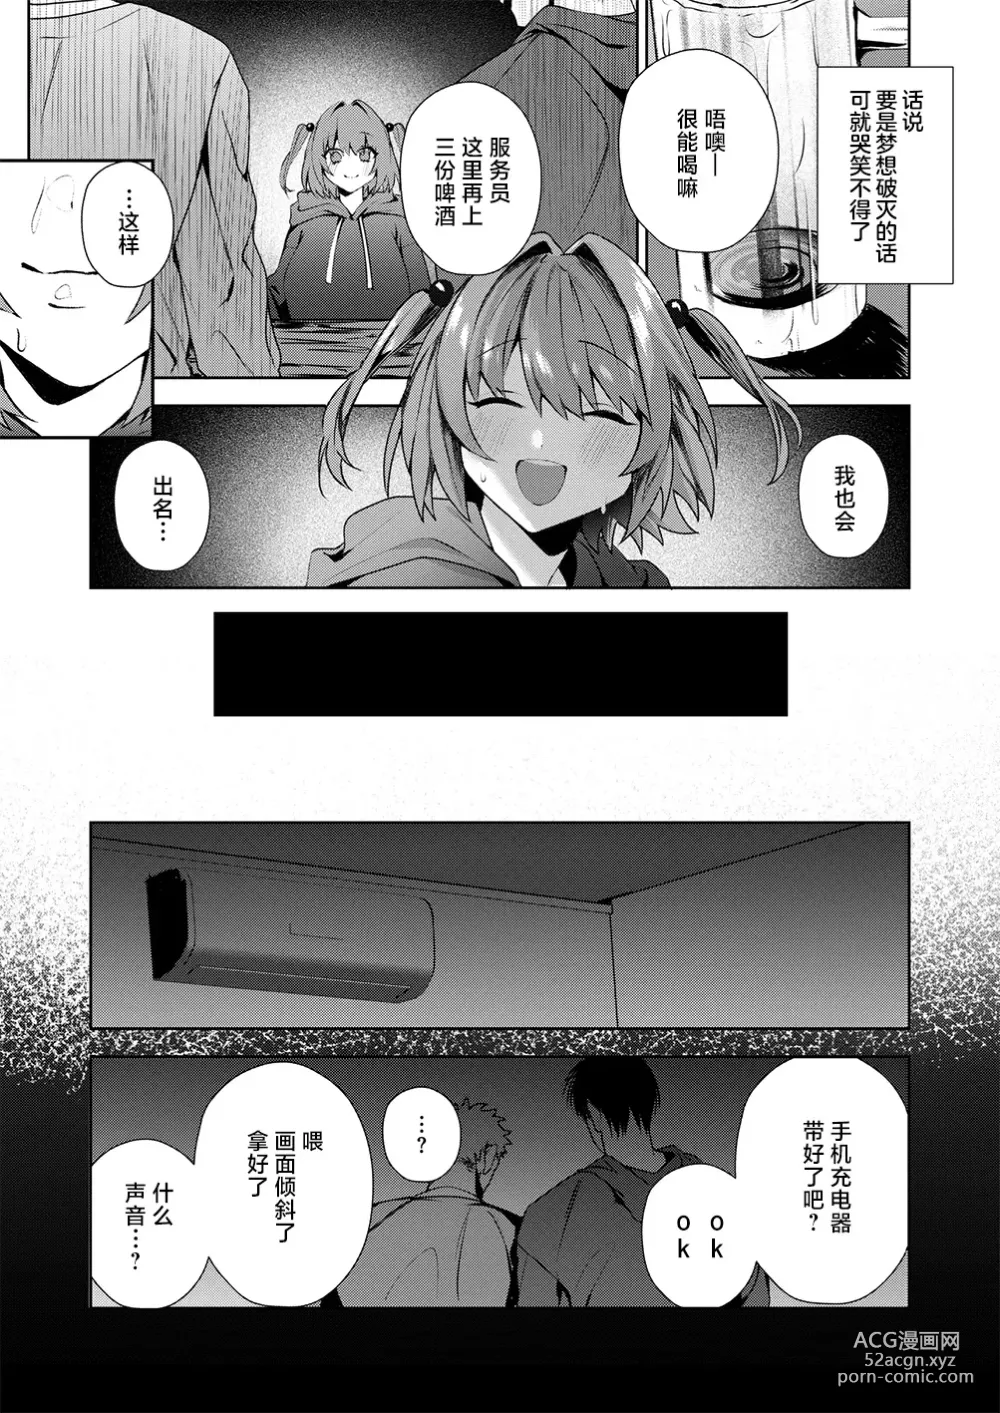 Page 9 of manga Motto Atashi o Oshite kure!